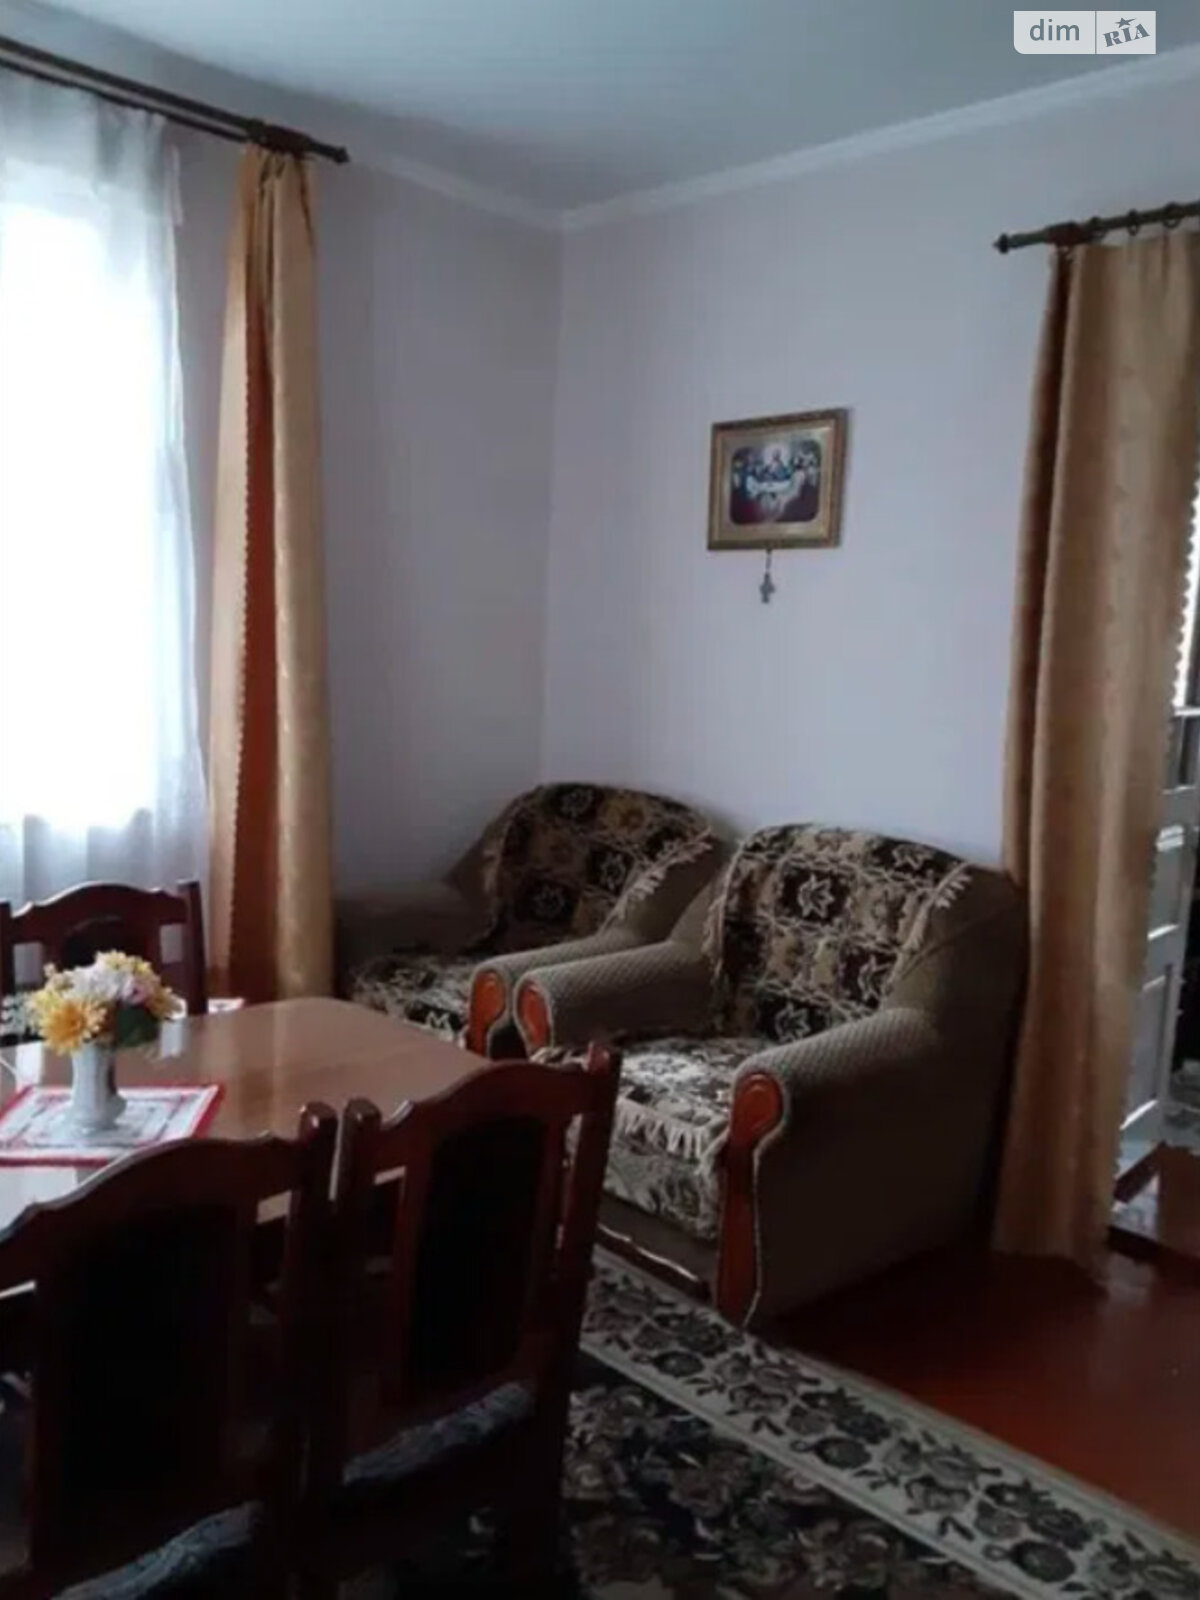 Продажа части дома в Жидачове, улица Сагайдачного 9, 3 комнаты фото 1